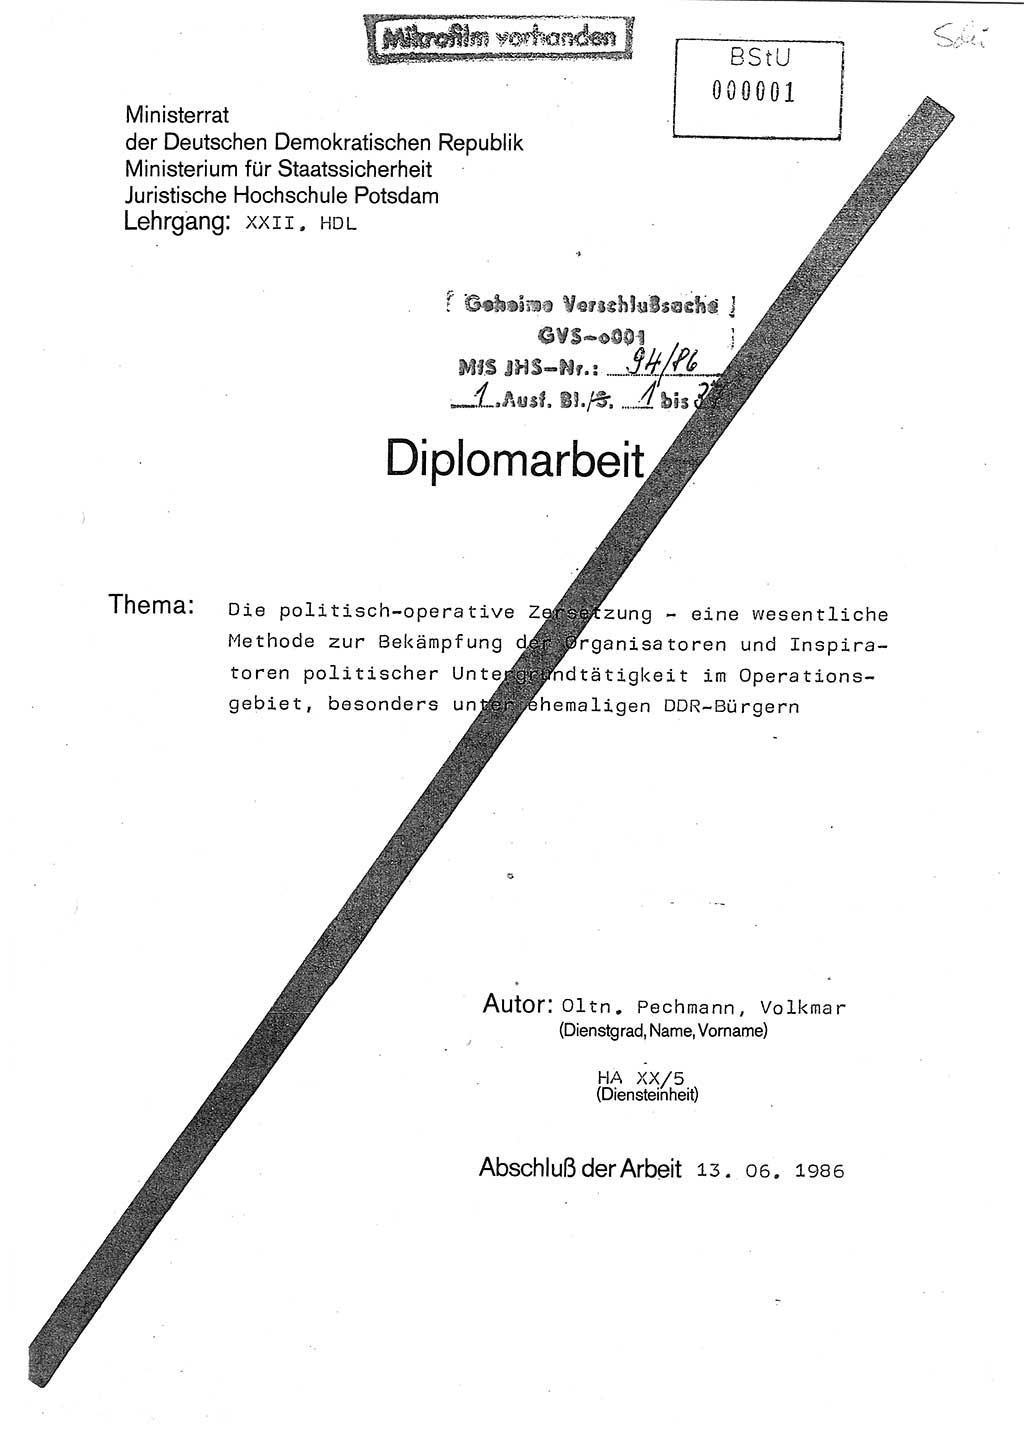 Diplomarbeit Oberleutnant Volkmar Pechmann (HA ⅩⅩ/5), Ministerium für Staatssicherheit (MfS) [Deutsche Demokratische Republik (DDR)], Juristische Hochschule (JHS), Geheime Verschlußsache (GVS) o001-94/86, Potsdam 1986, Blatt 1 (Dipl.-Arb. MfS DDR JHS GVS o001-94/86 1986, Bl. 1)